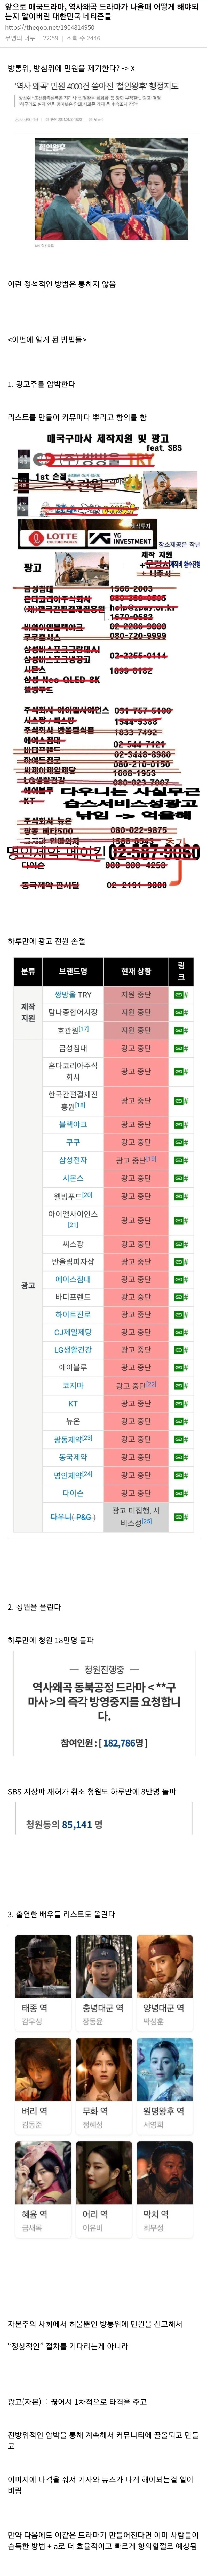 역사왜곡 드라마에 효과적으로 대응하는 법을 학습한 네티즌들